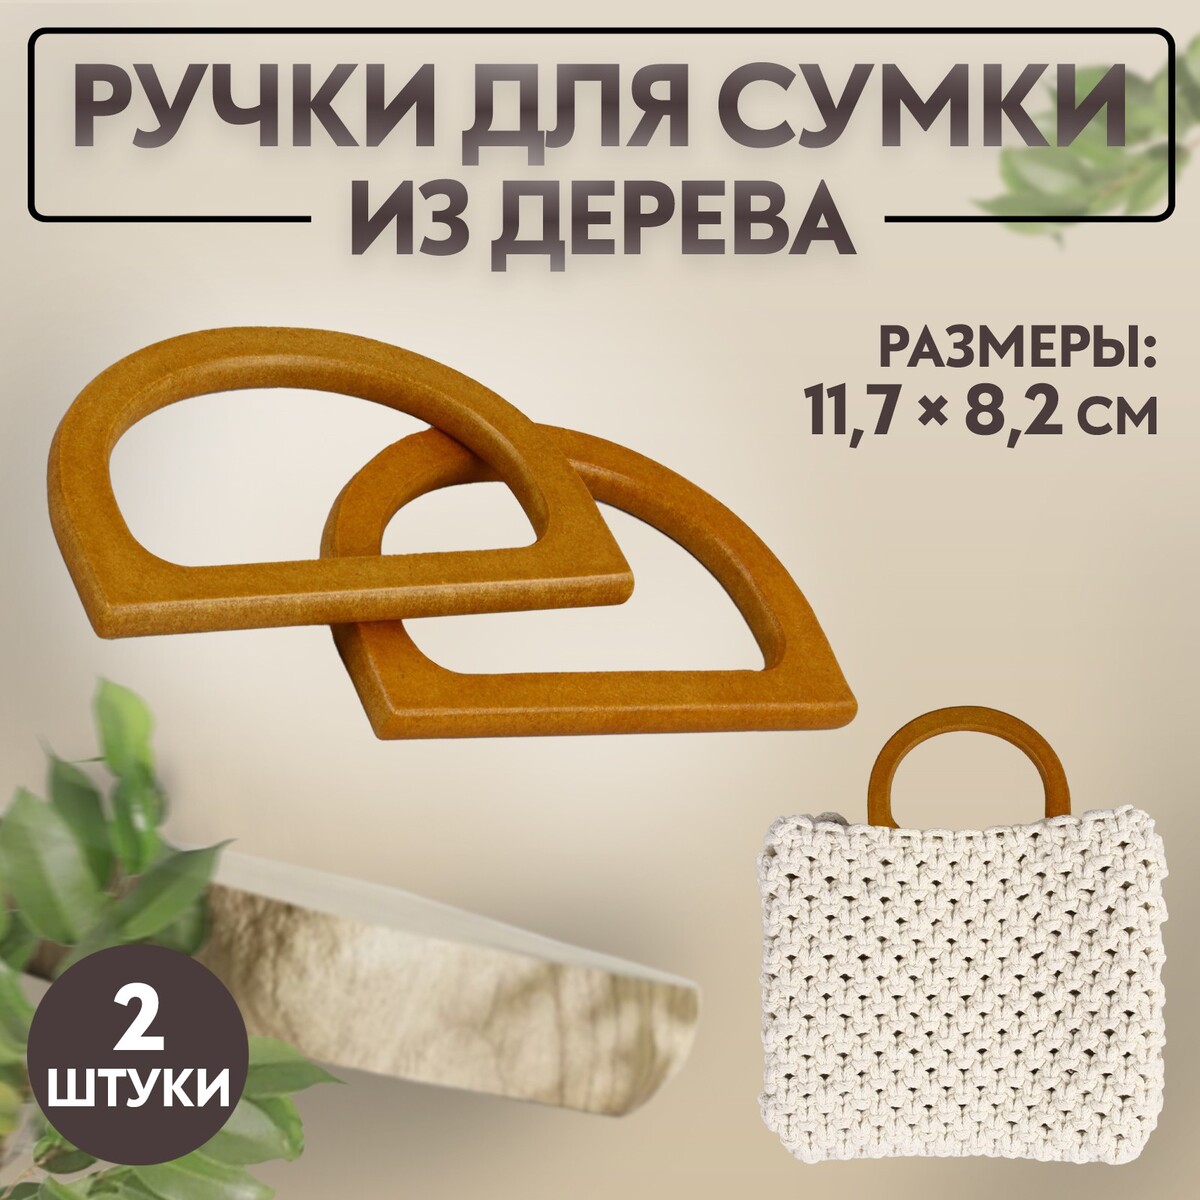 Ручки для сумки деревянные, 11,7 × 8,2 см, 2 шт, цвет коричневый ручки для сумки деревянные плетеные d 10 2 12 5 см 2 шт коричневый